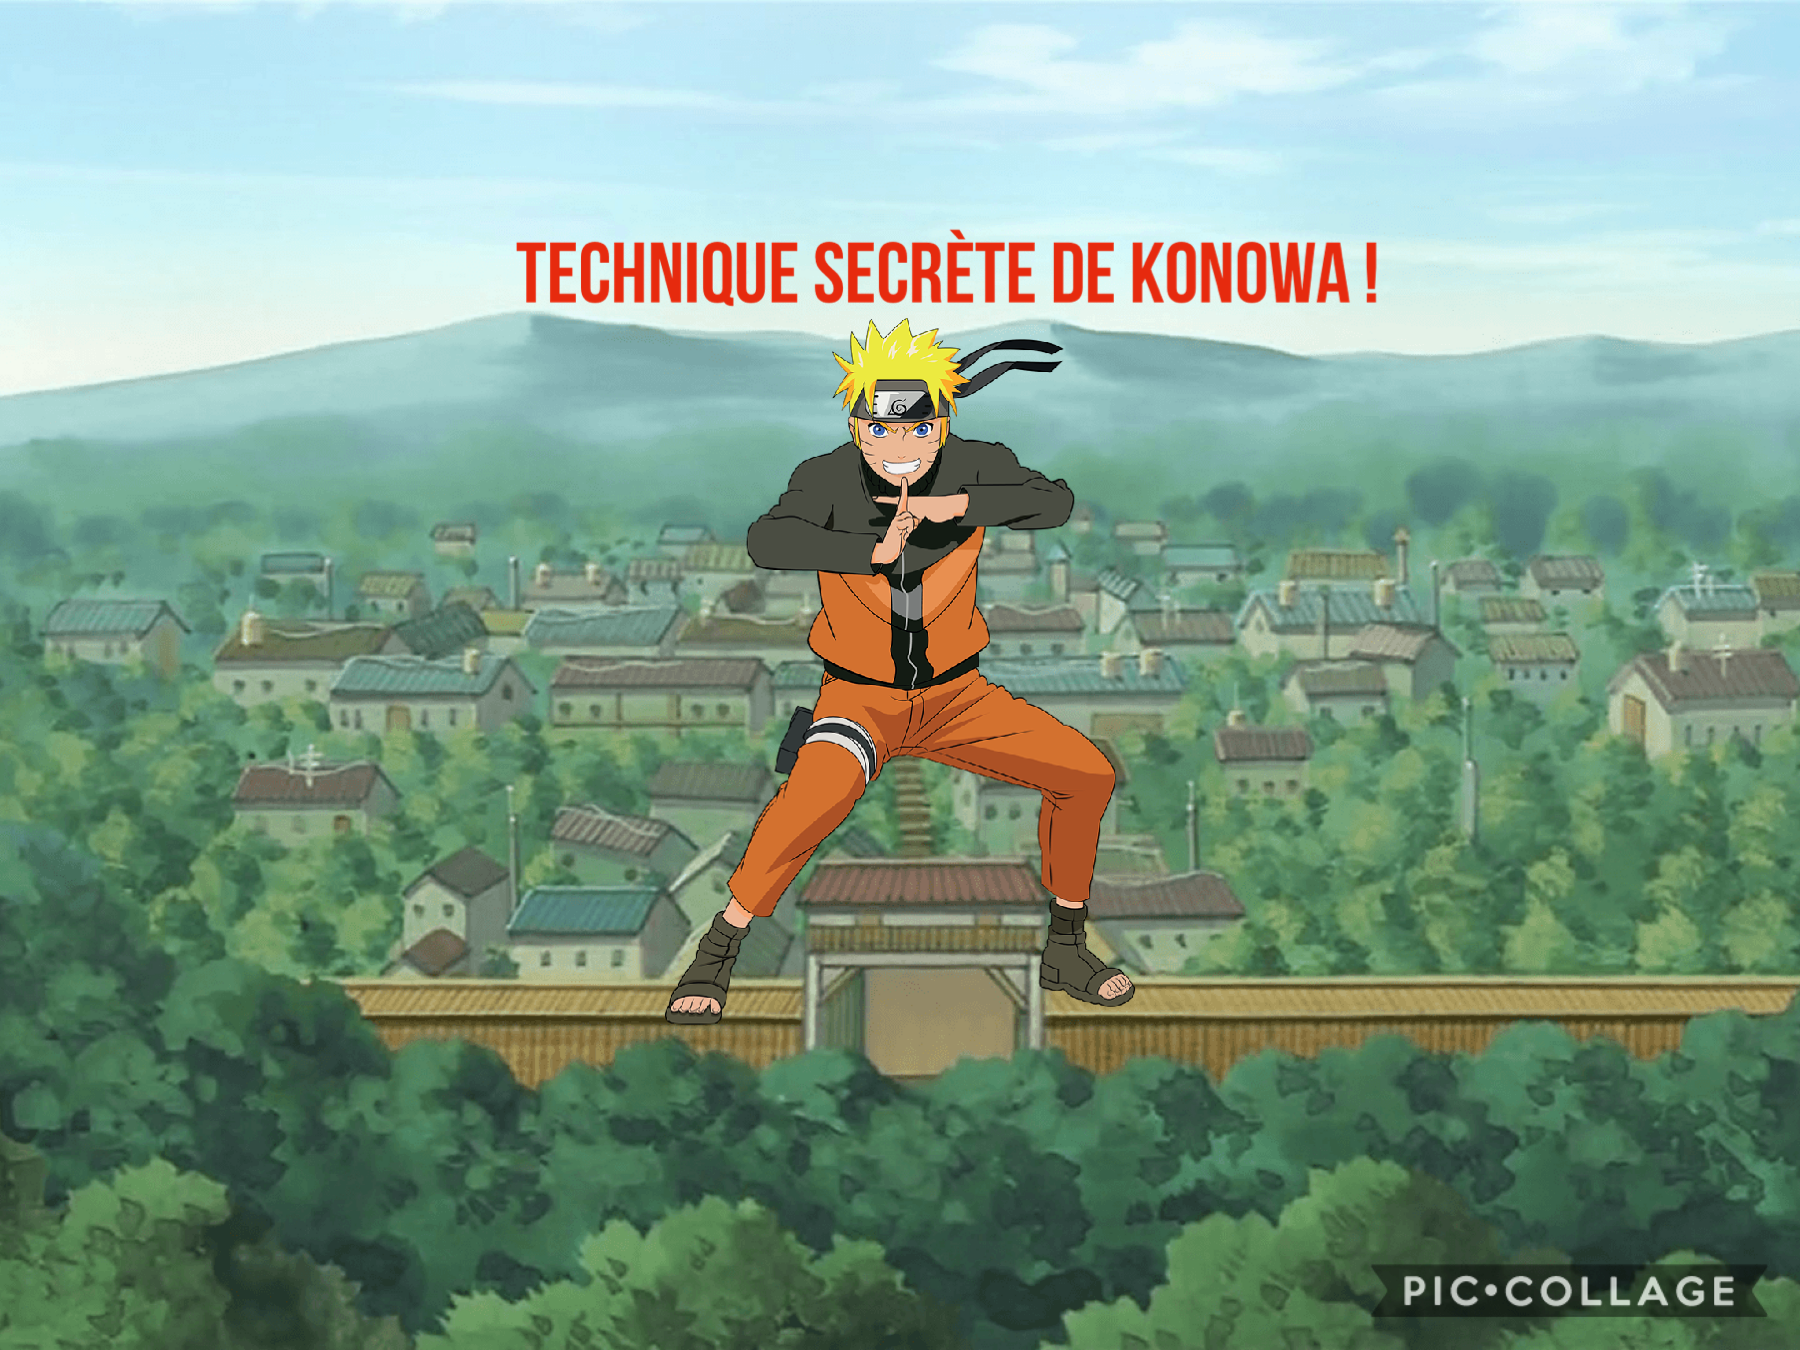 Technique secrete de Naruto